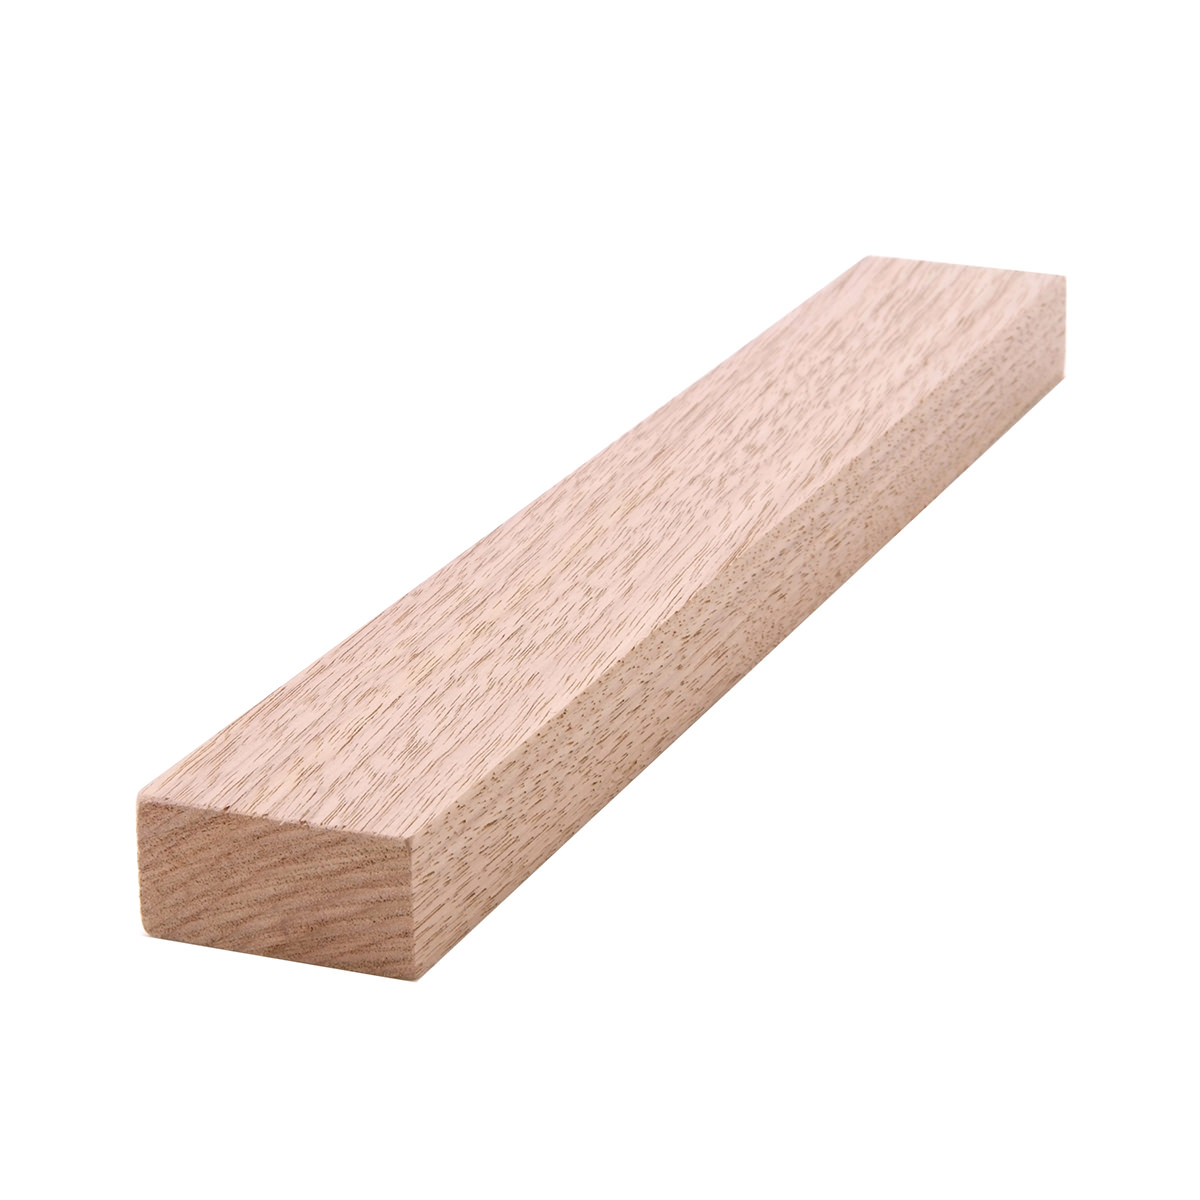 1x2 (3/4" x 11/2") Black Walnut S4S Lumber, Boards